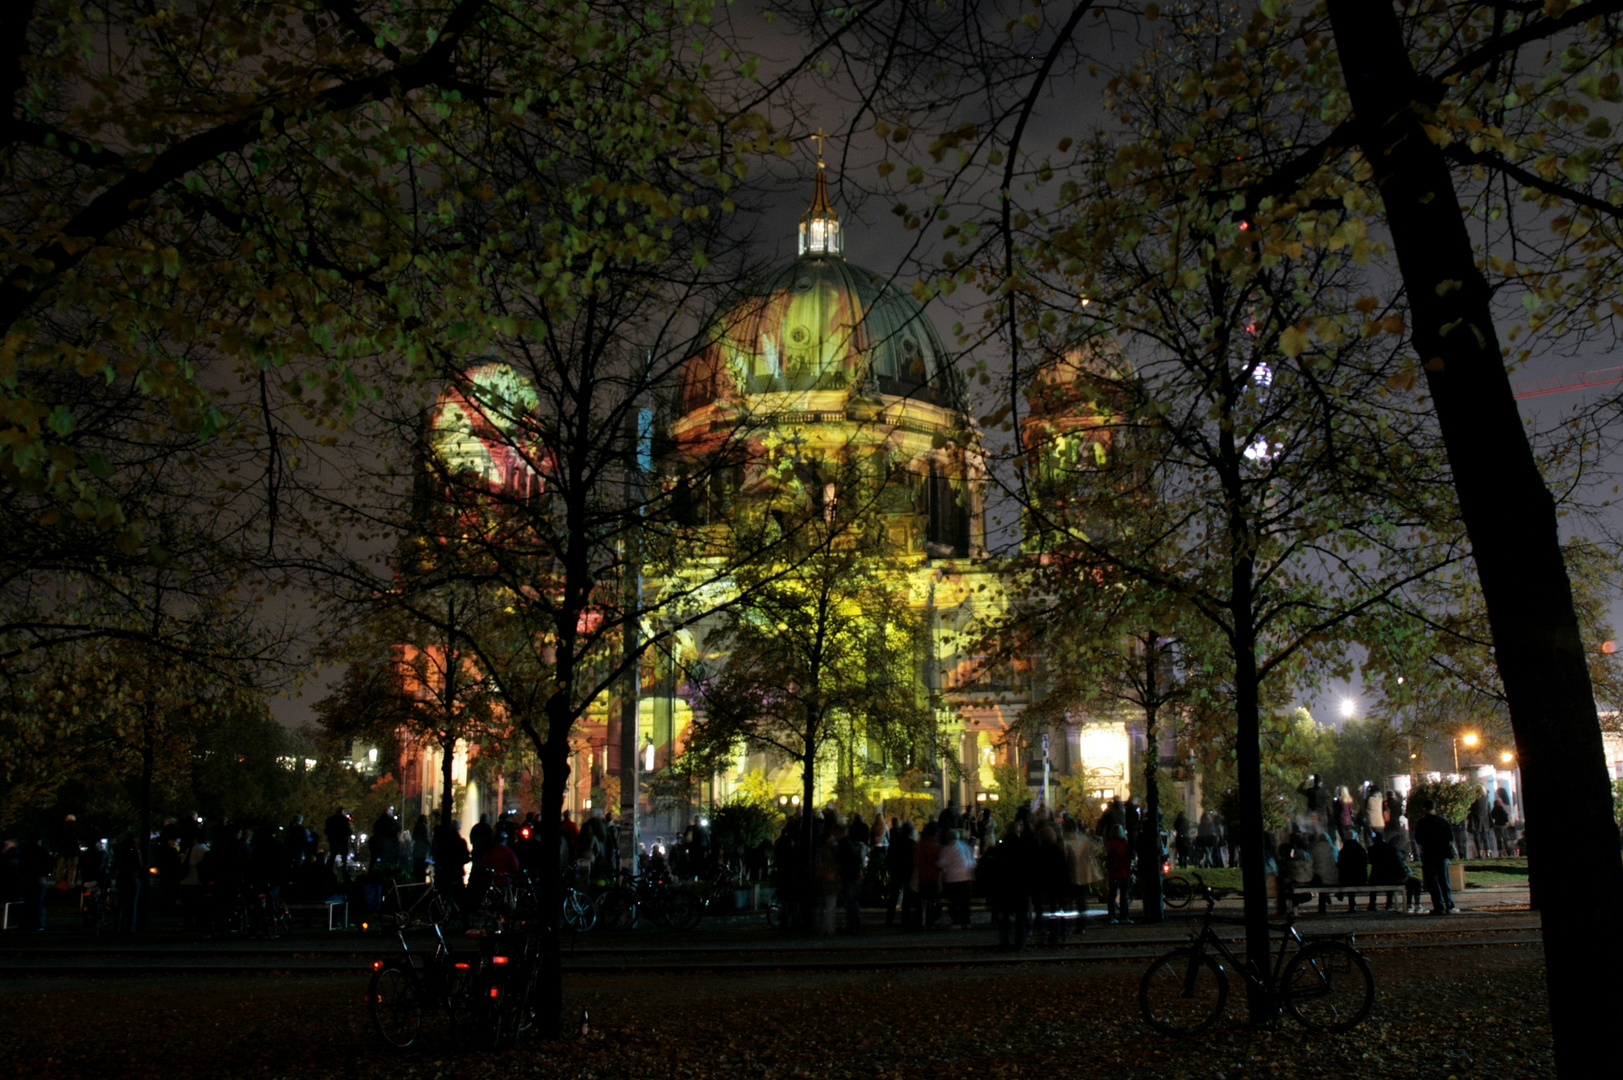 Festival of Lights Berlin 2013